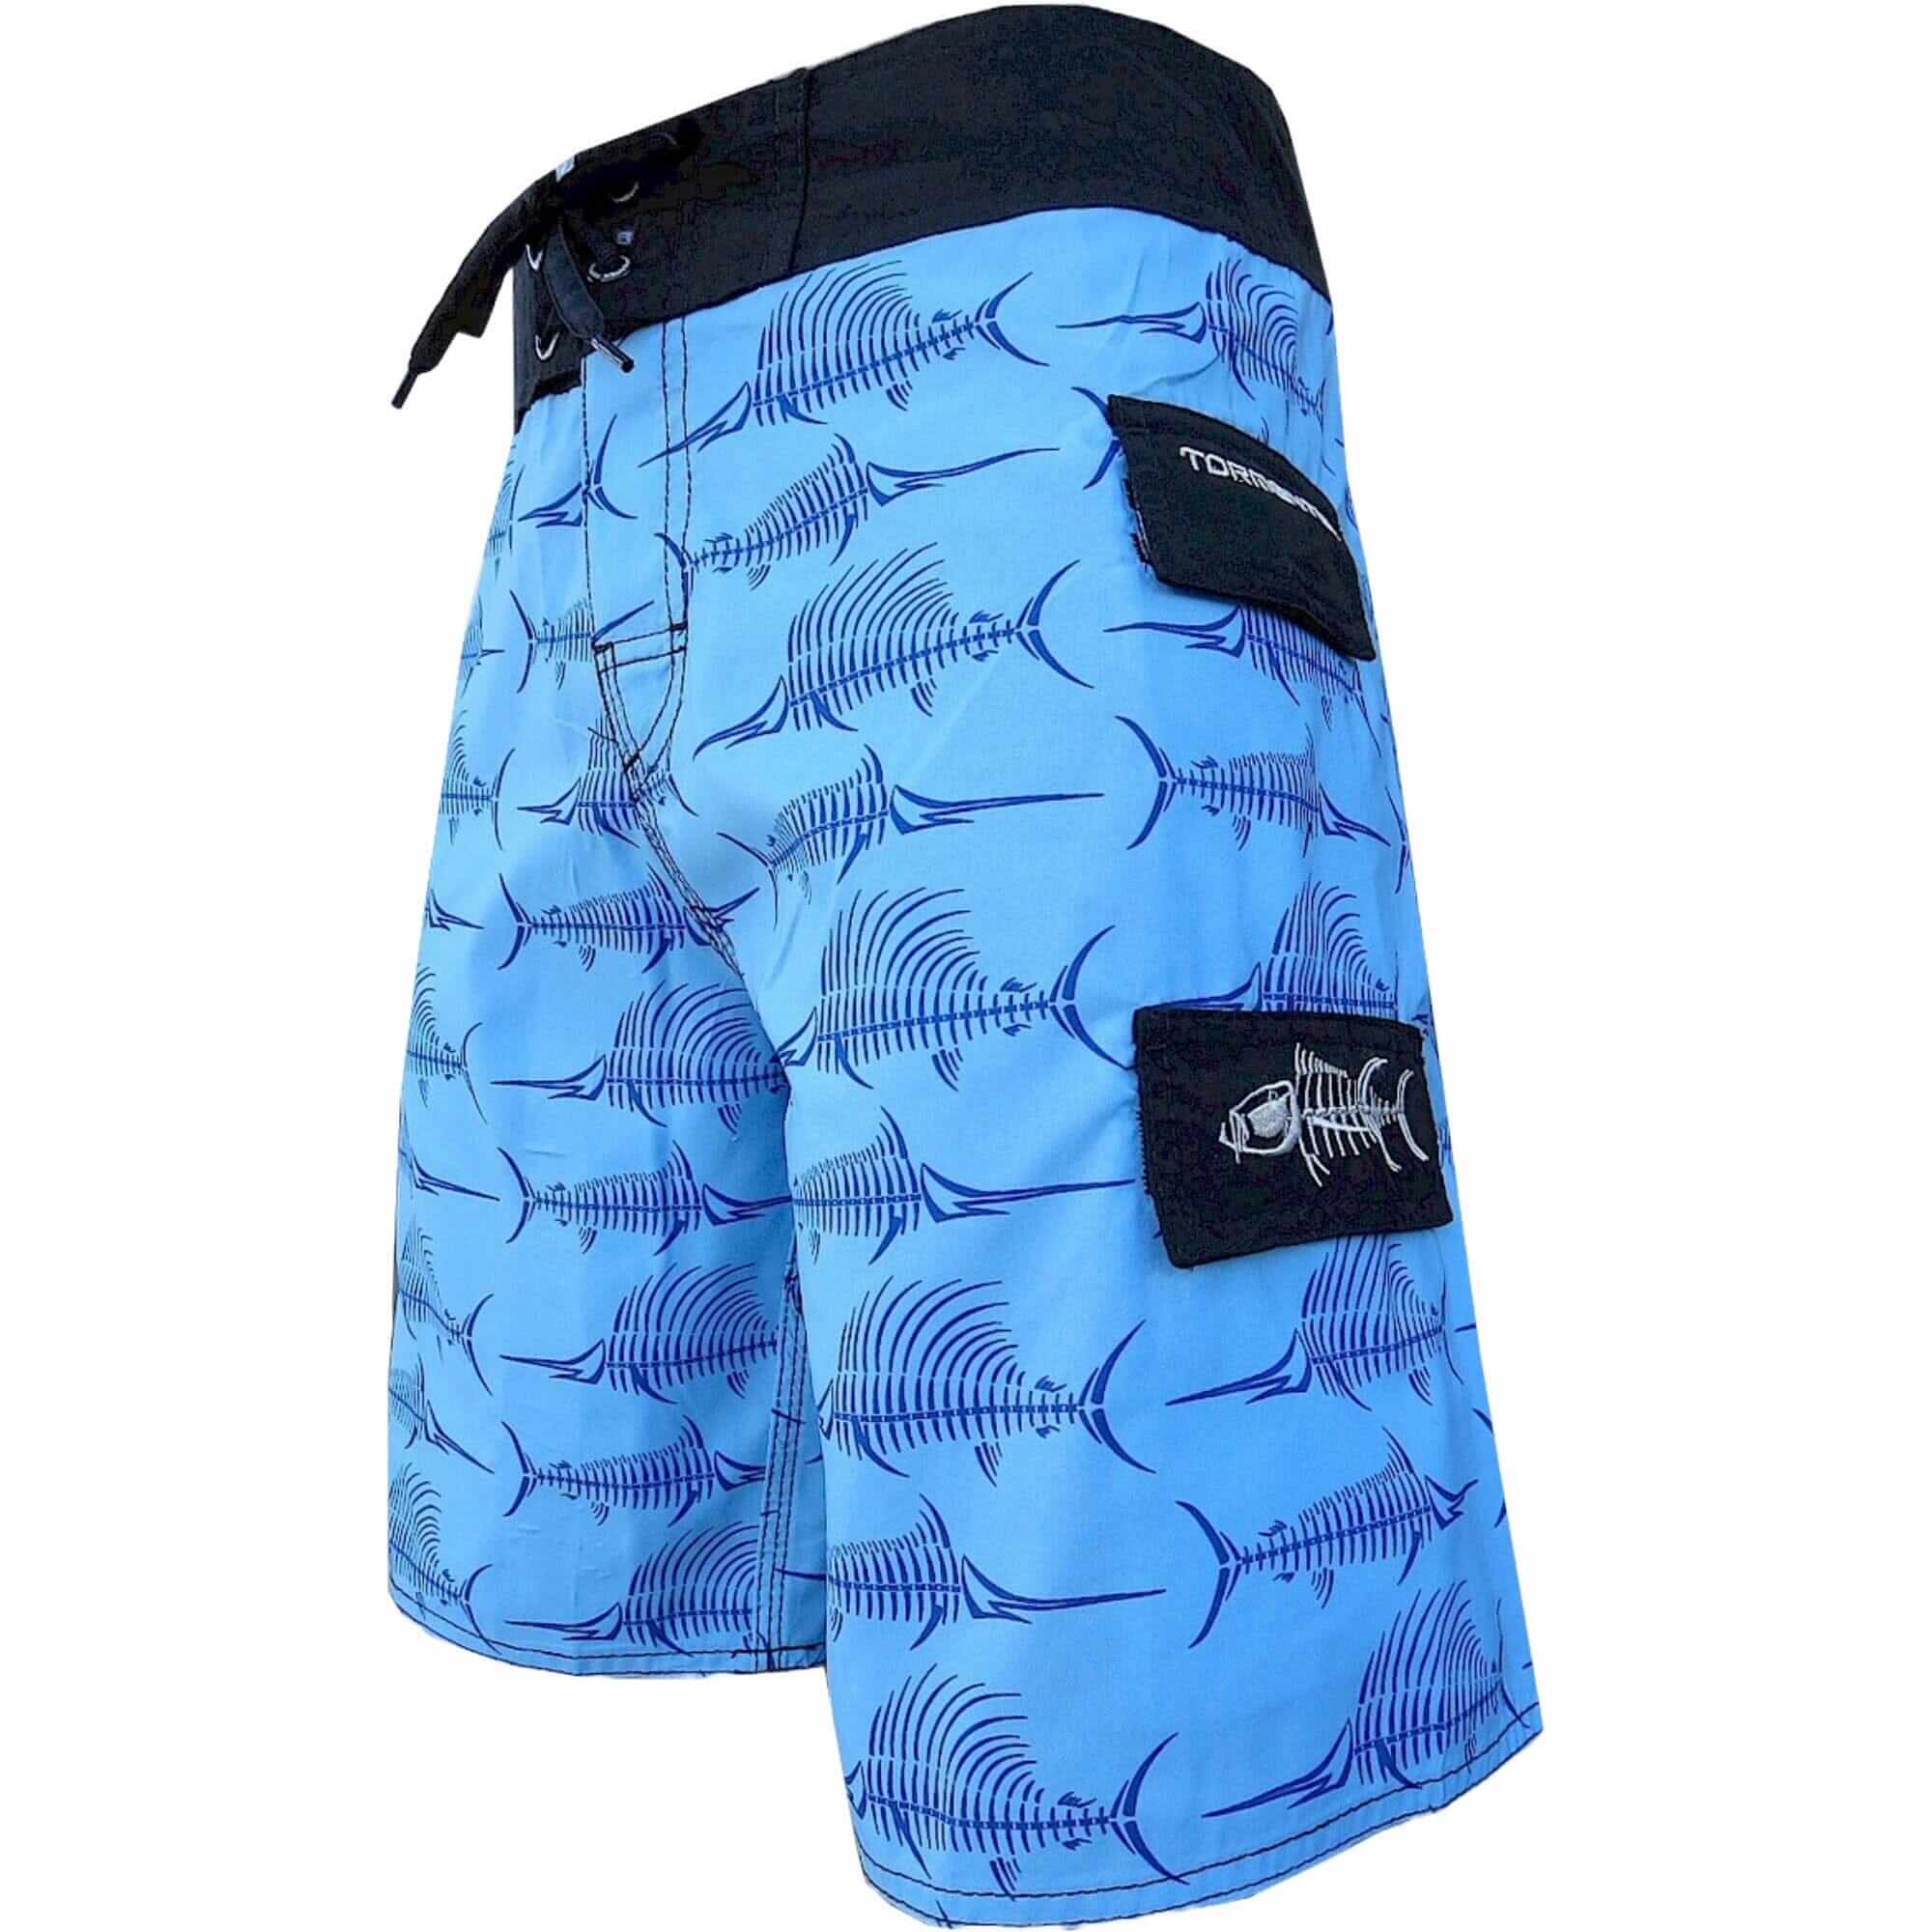 Tormenter Ocean Billfish Bones Board Shorts - Blue, 28